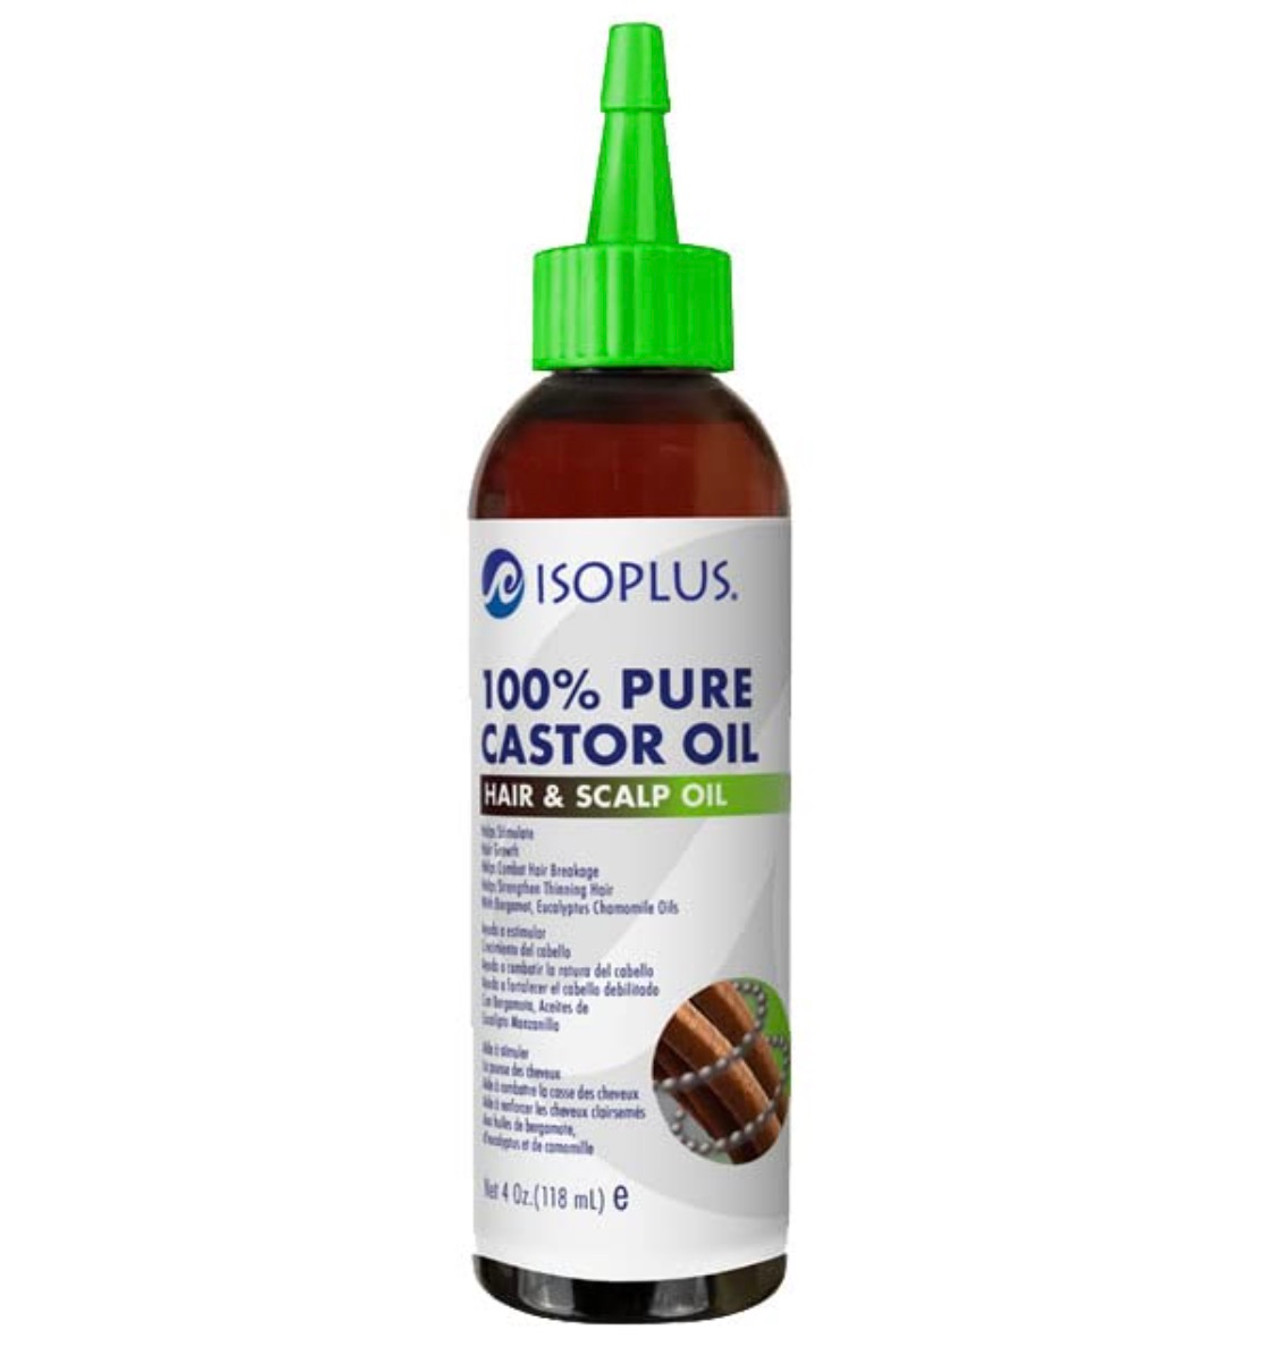 ISOPLUS 100% Pure Castor Oil Hair & Scalp Oil (4 oz)